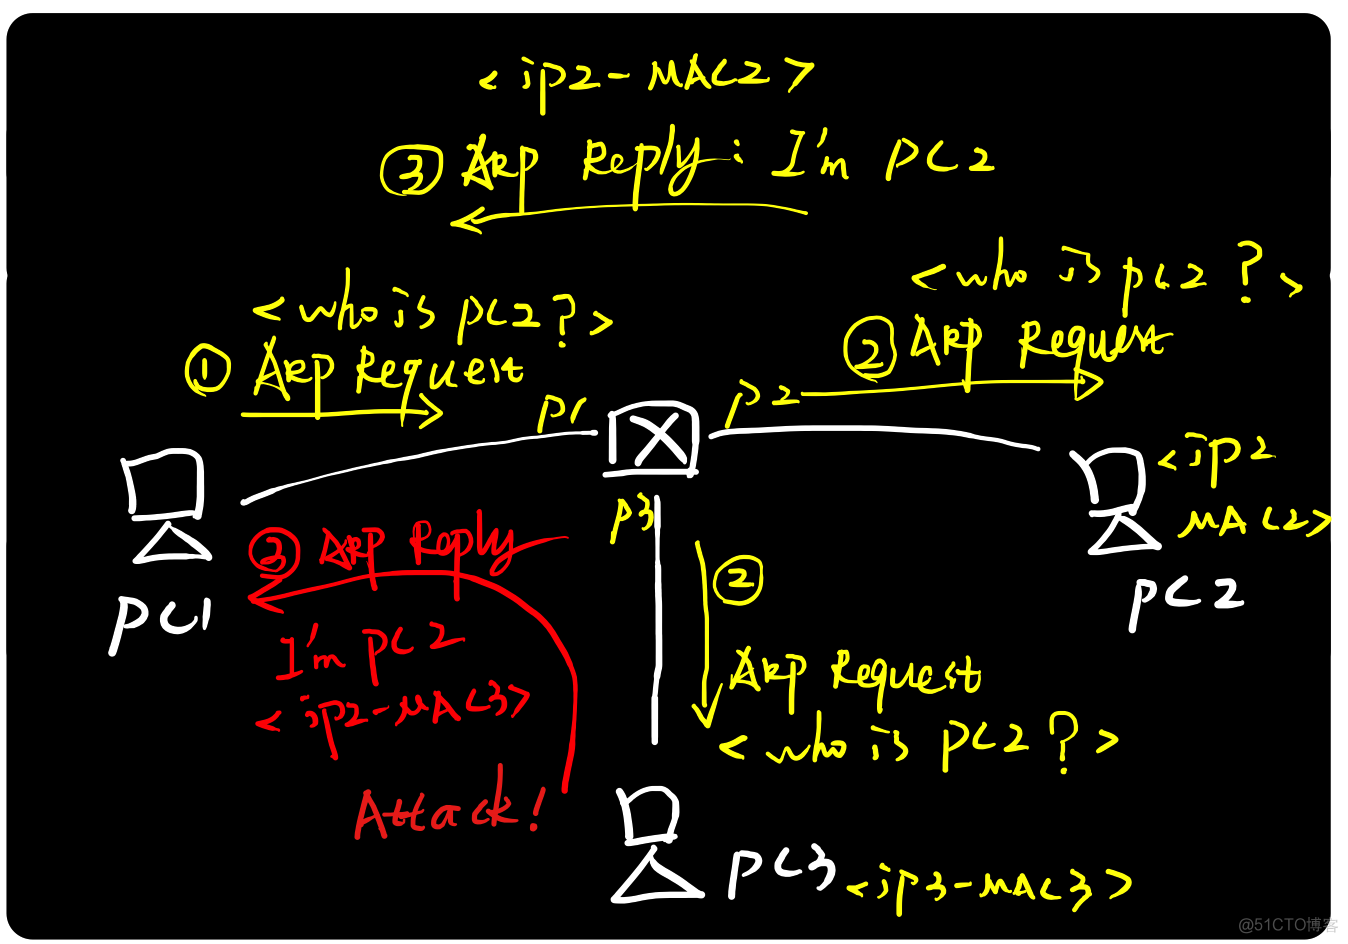 图解ARP协议（二）ARP攻击原理与实践_协议_03